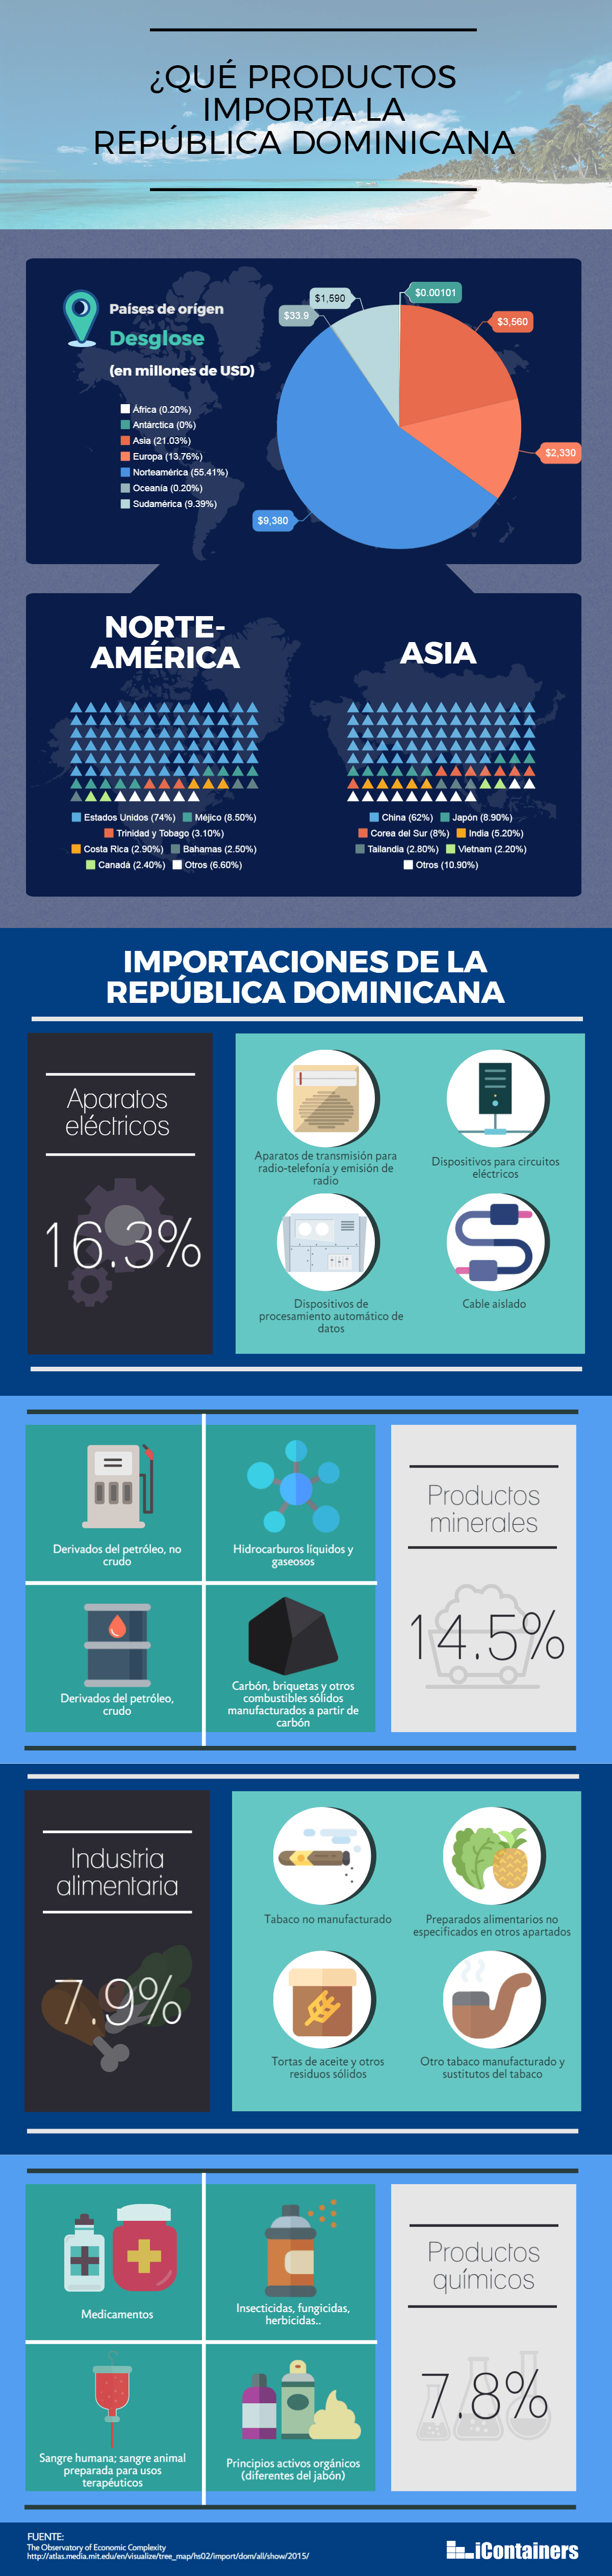 Infografía sobre las principales importaciones en la República DOminicana